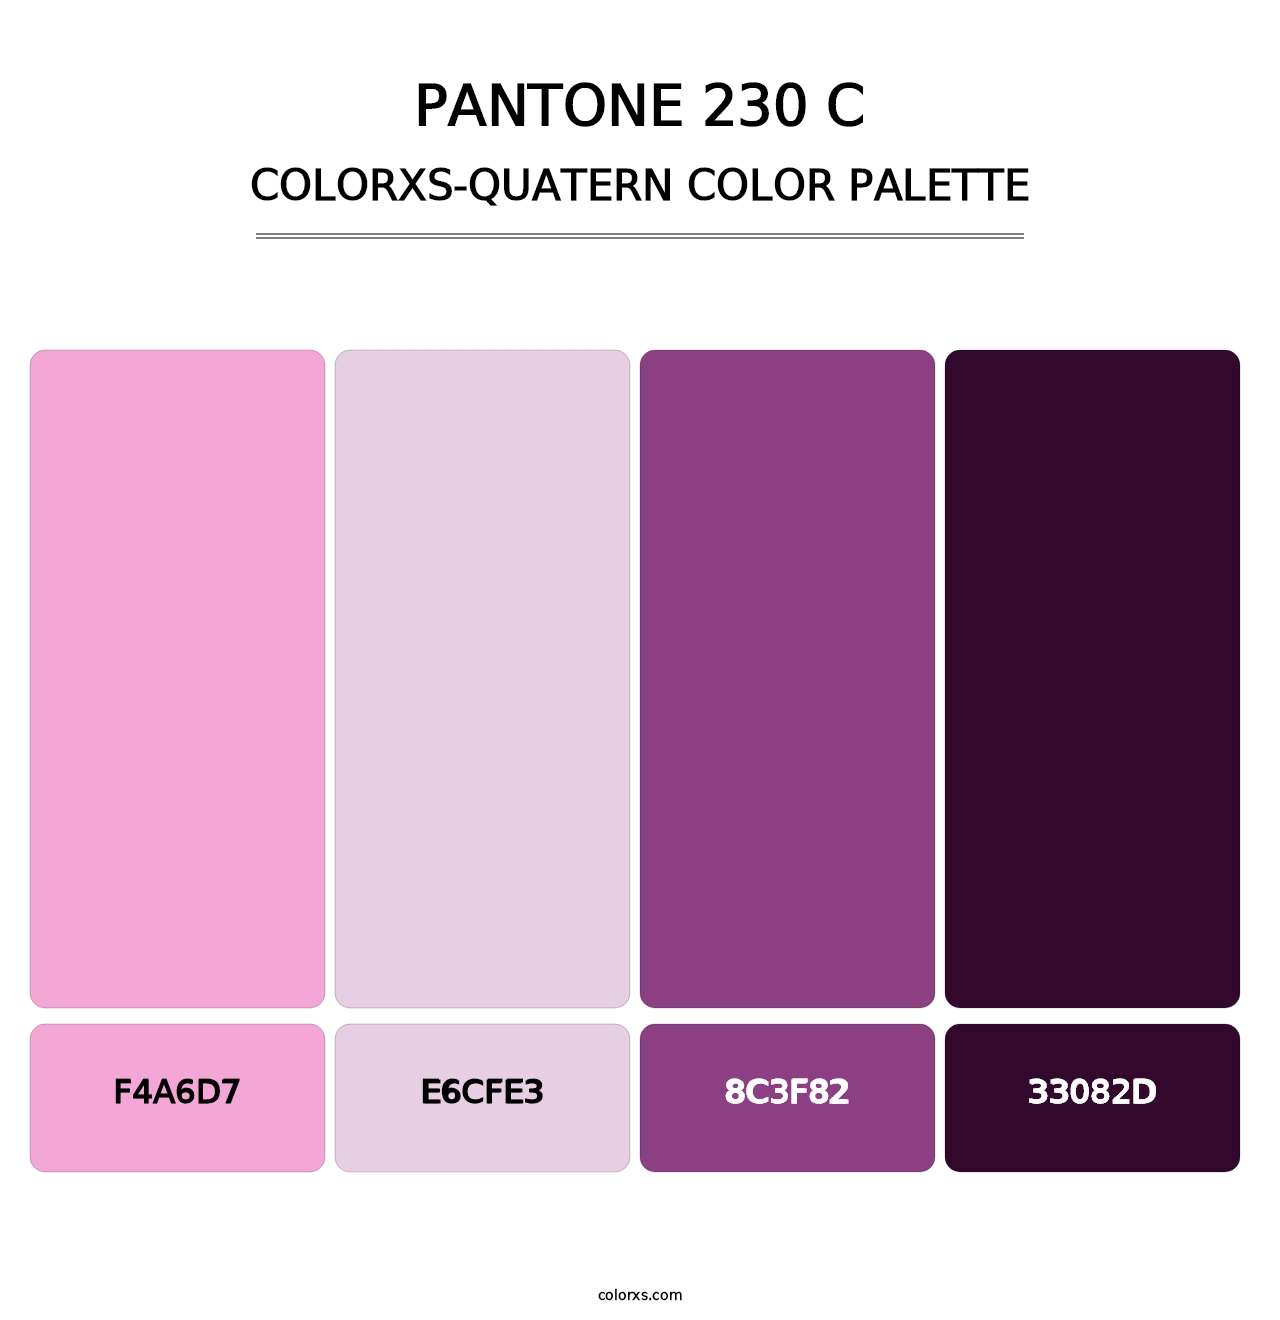 PANTONE 230 C - Colorxs Quatern Palette